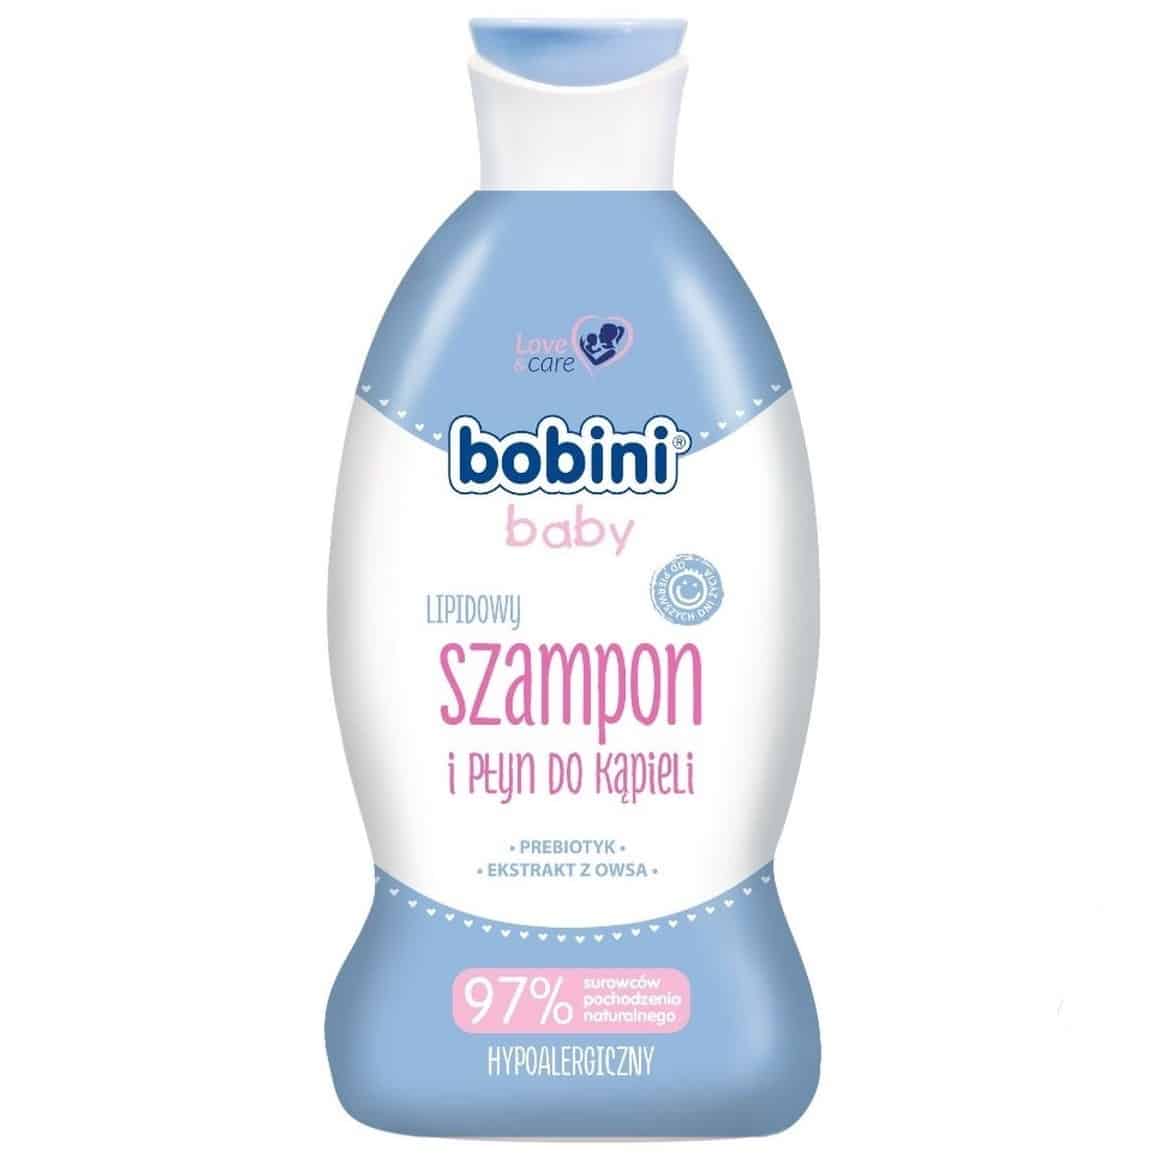 Bobini Baby, lipidowy szampon i płyn do kąpieli, Matka Aptekarka